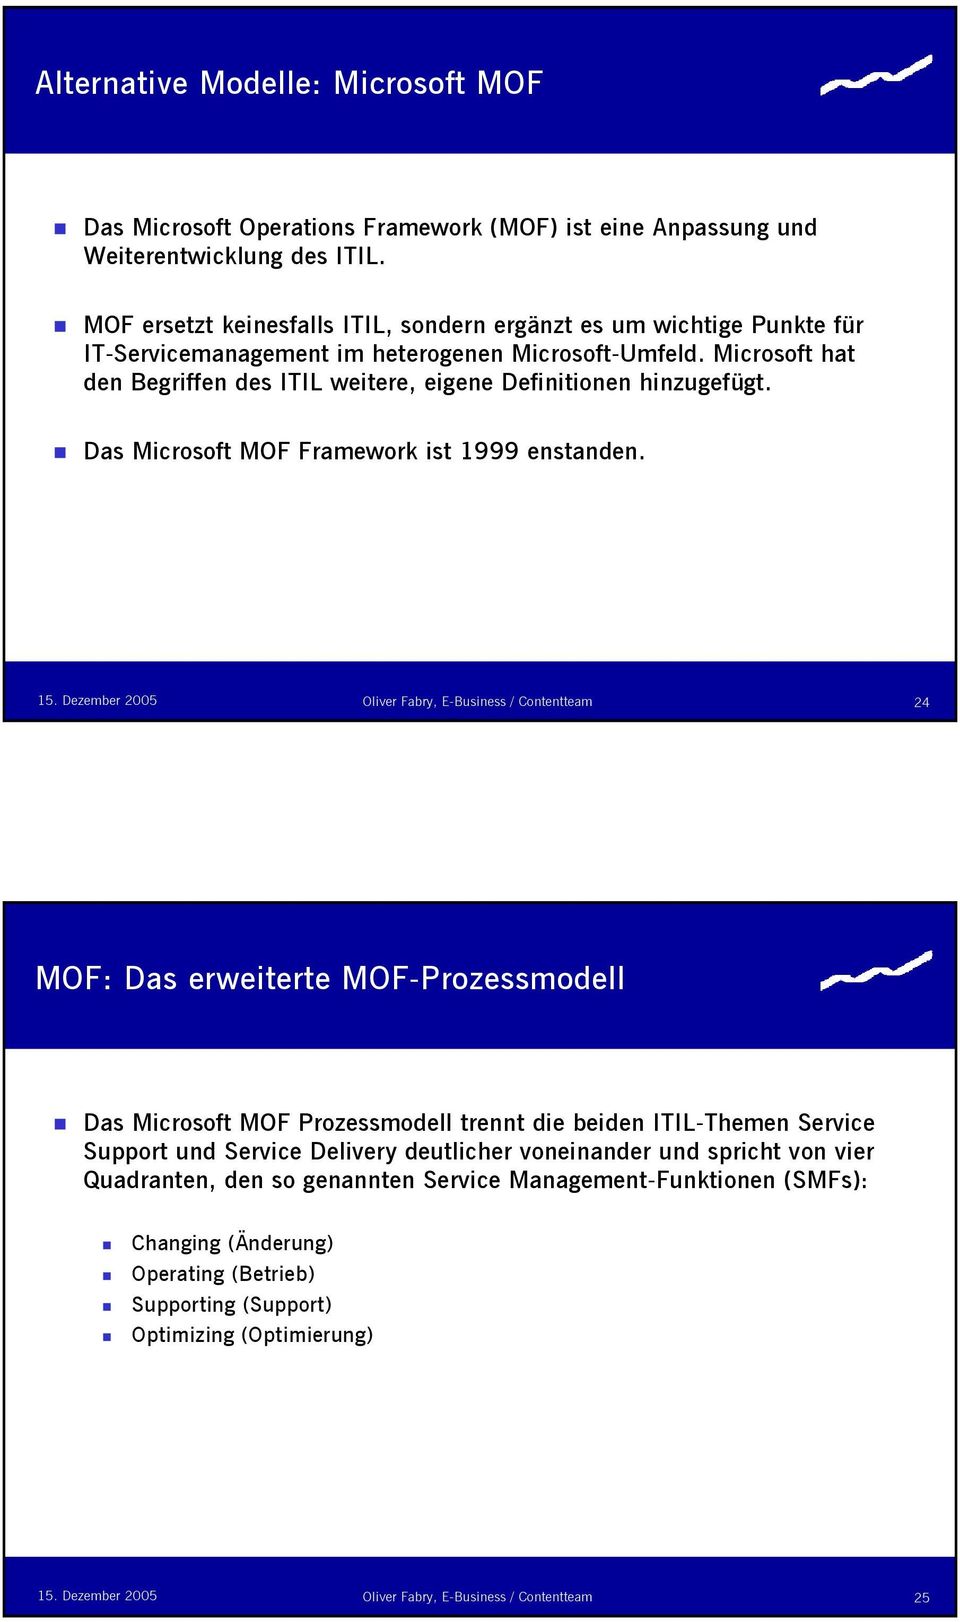 Microsoft hat den Begriffen des ITIL weitere, eigene Definitionen hinzugefügt. Das Microsoft MOF Framework ist 1999 enstanden.